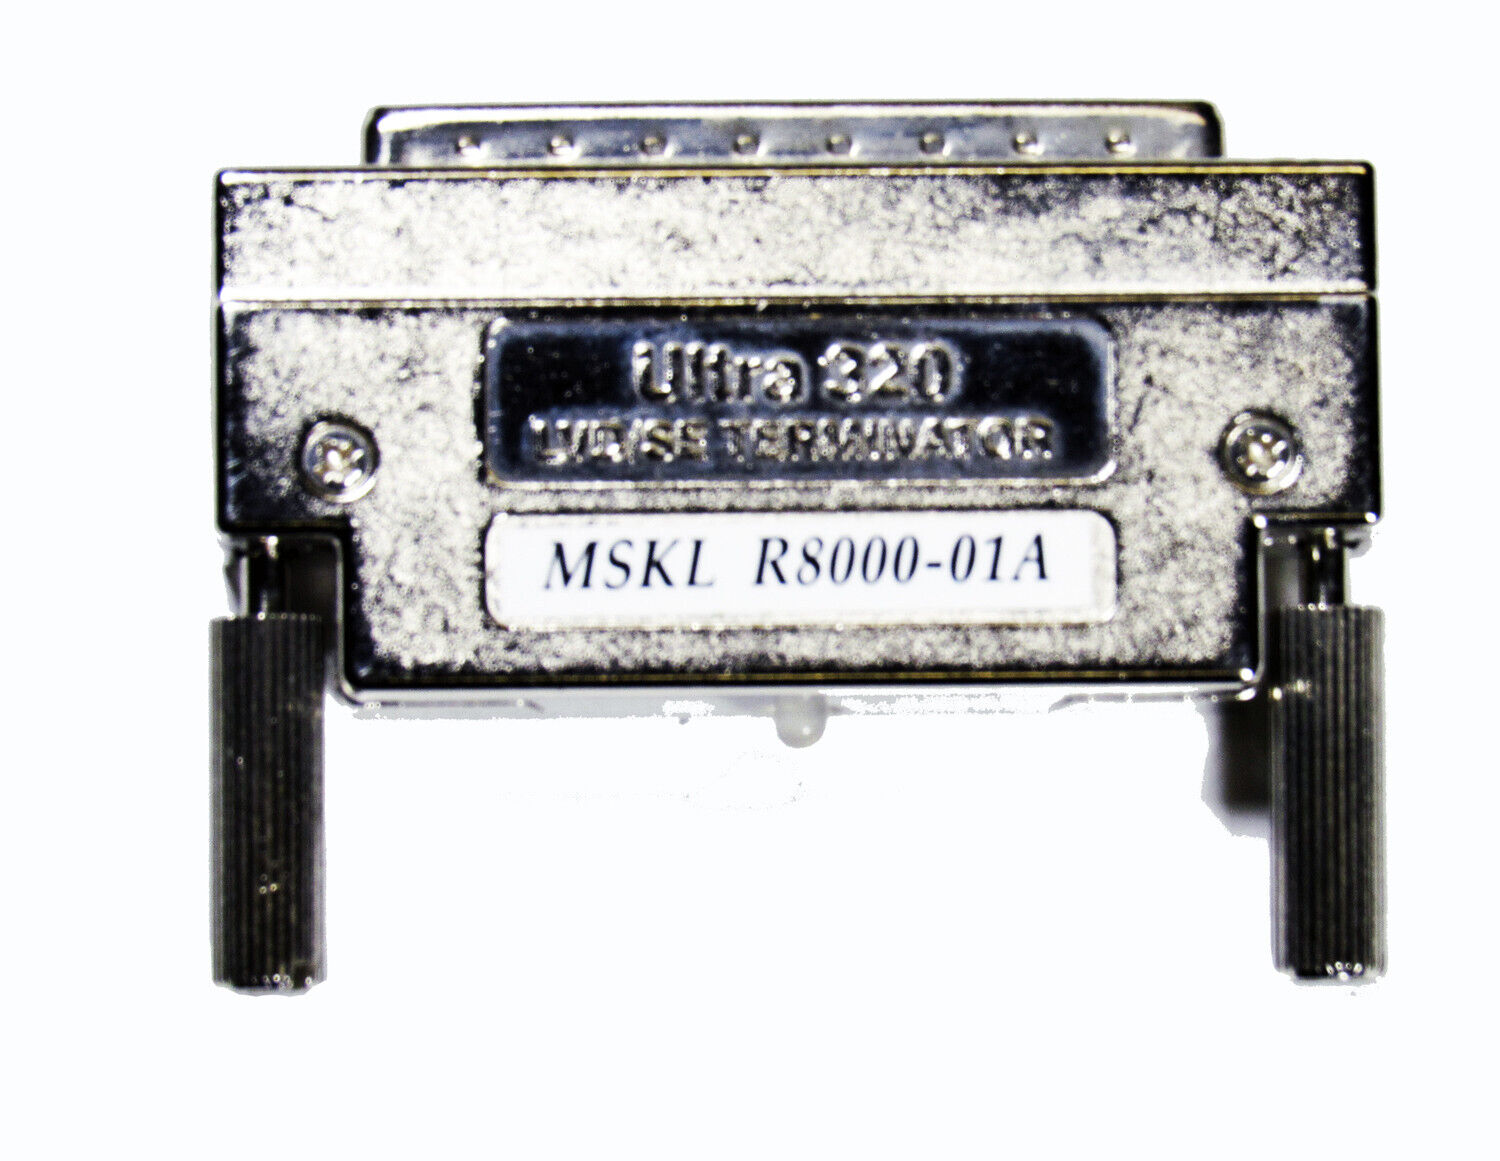 IBM MSKL SCSI Ultra 320 R8000-01A LVD/SE Terminator